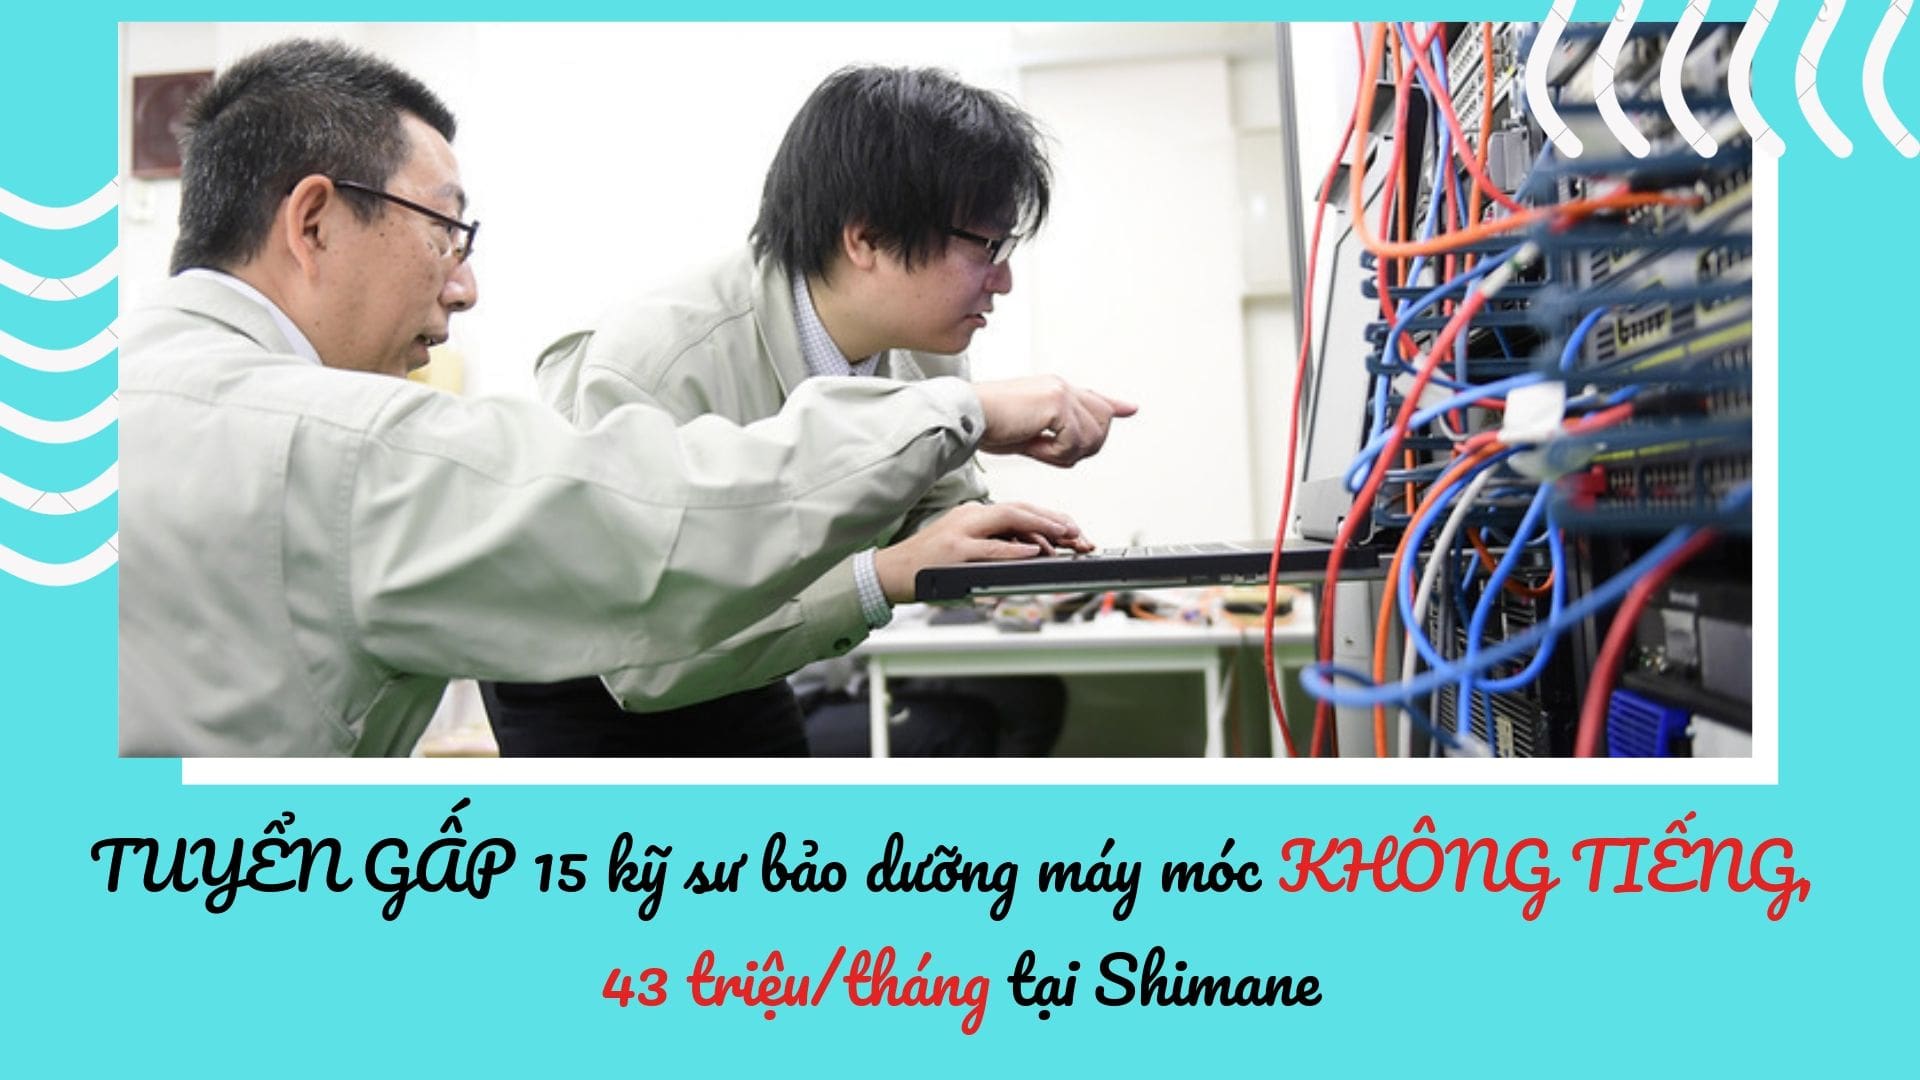 kỹ sư bảo dưỡng máy móc KHÔNG TIẾNG, lương cao tại Shimane